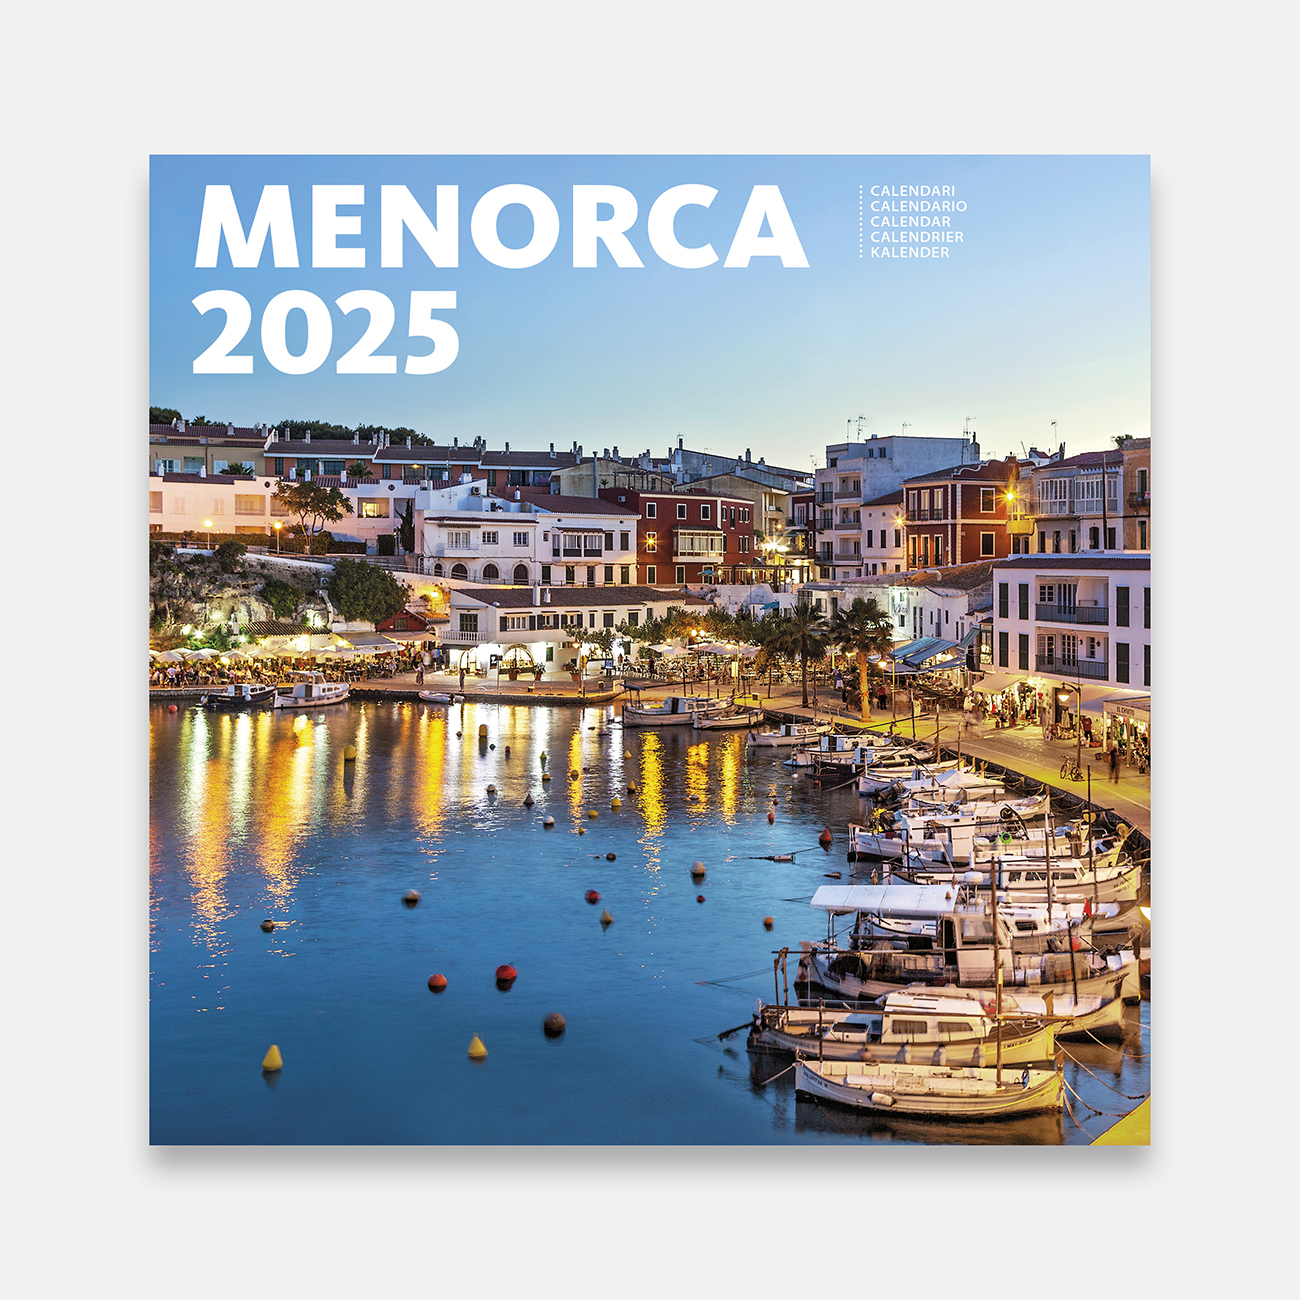 Calendari 2025 Menorca 25me b calendario pared 2025 menorca